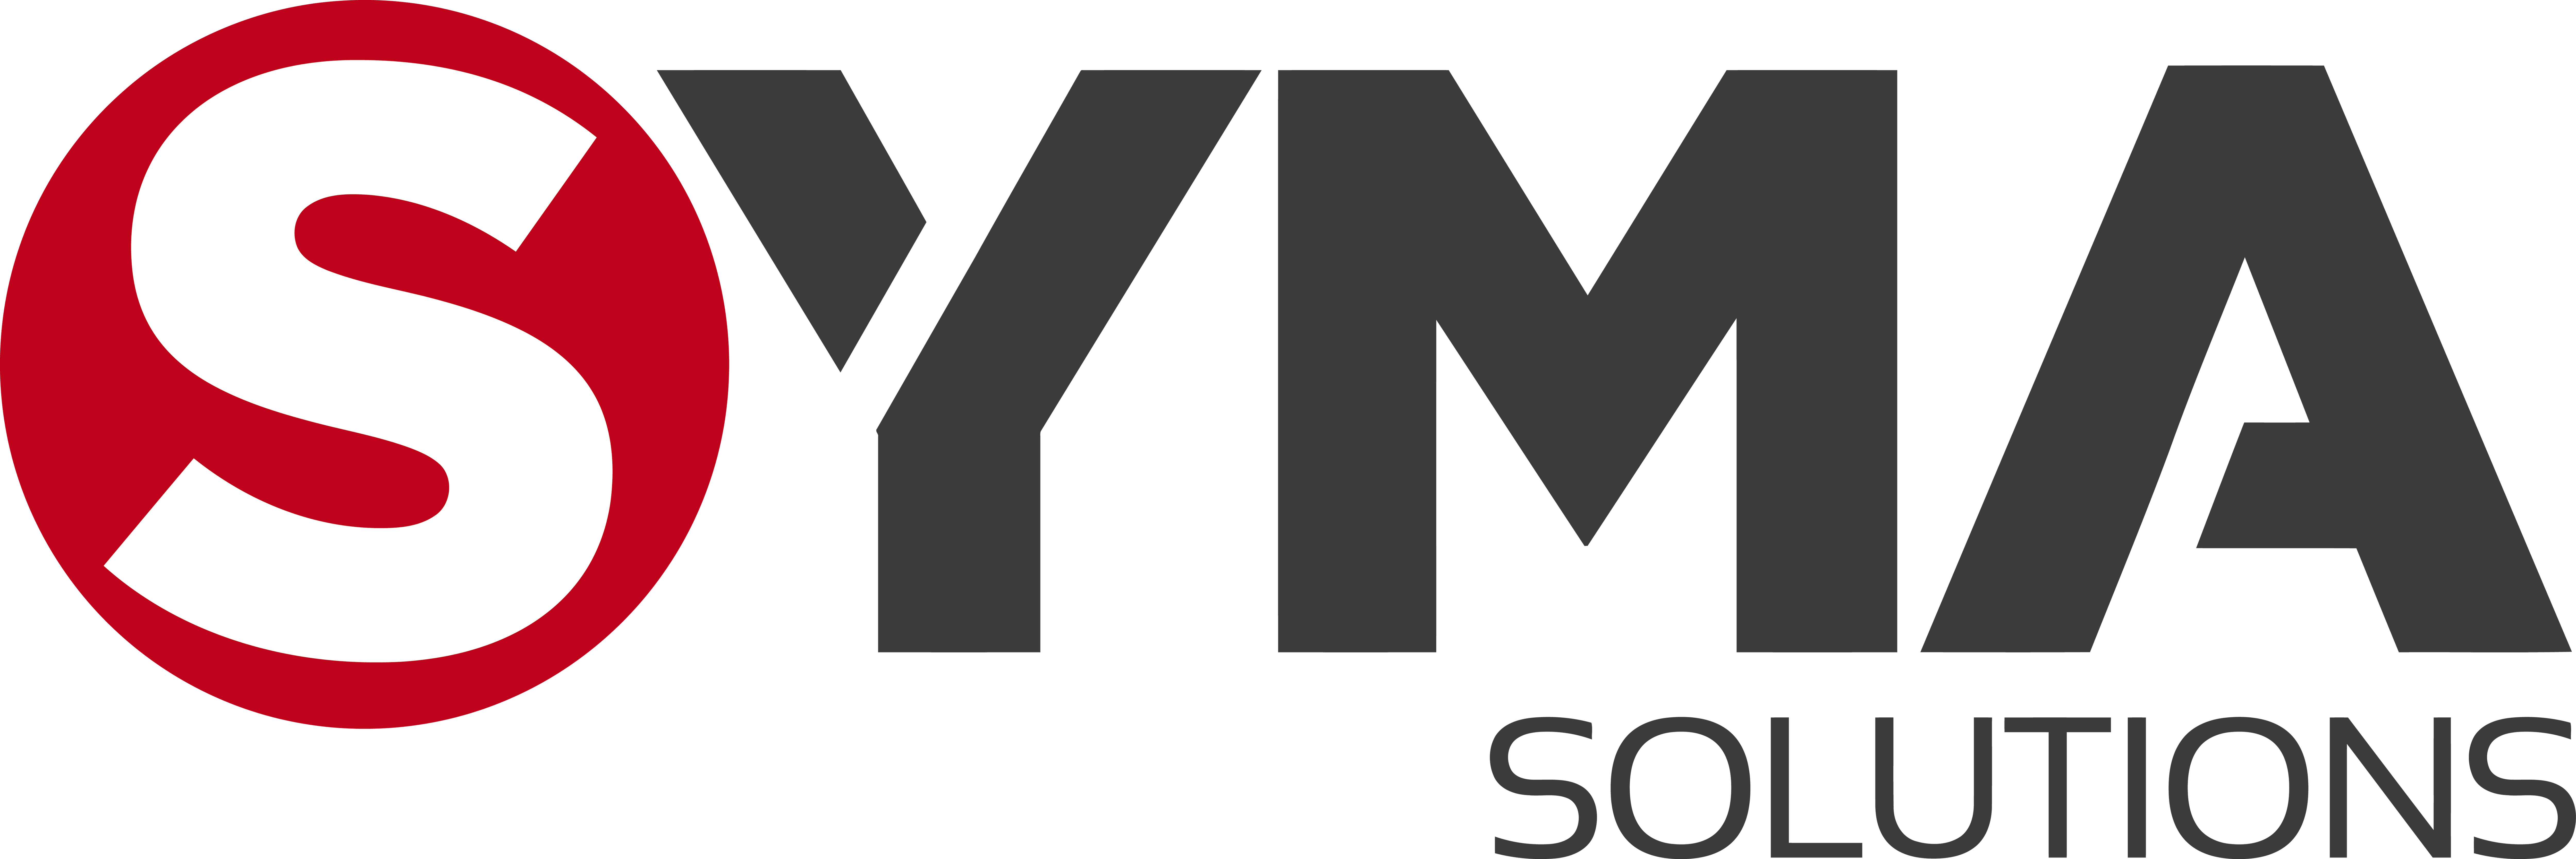 Logo-Syma-Preto.png